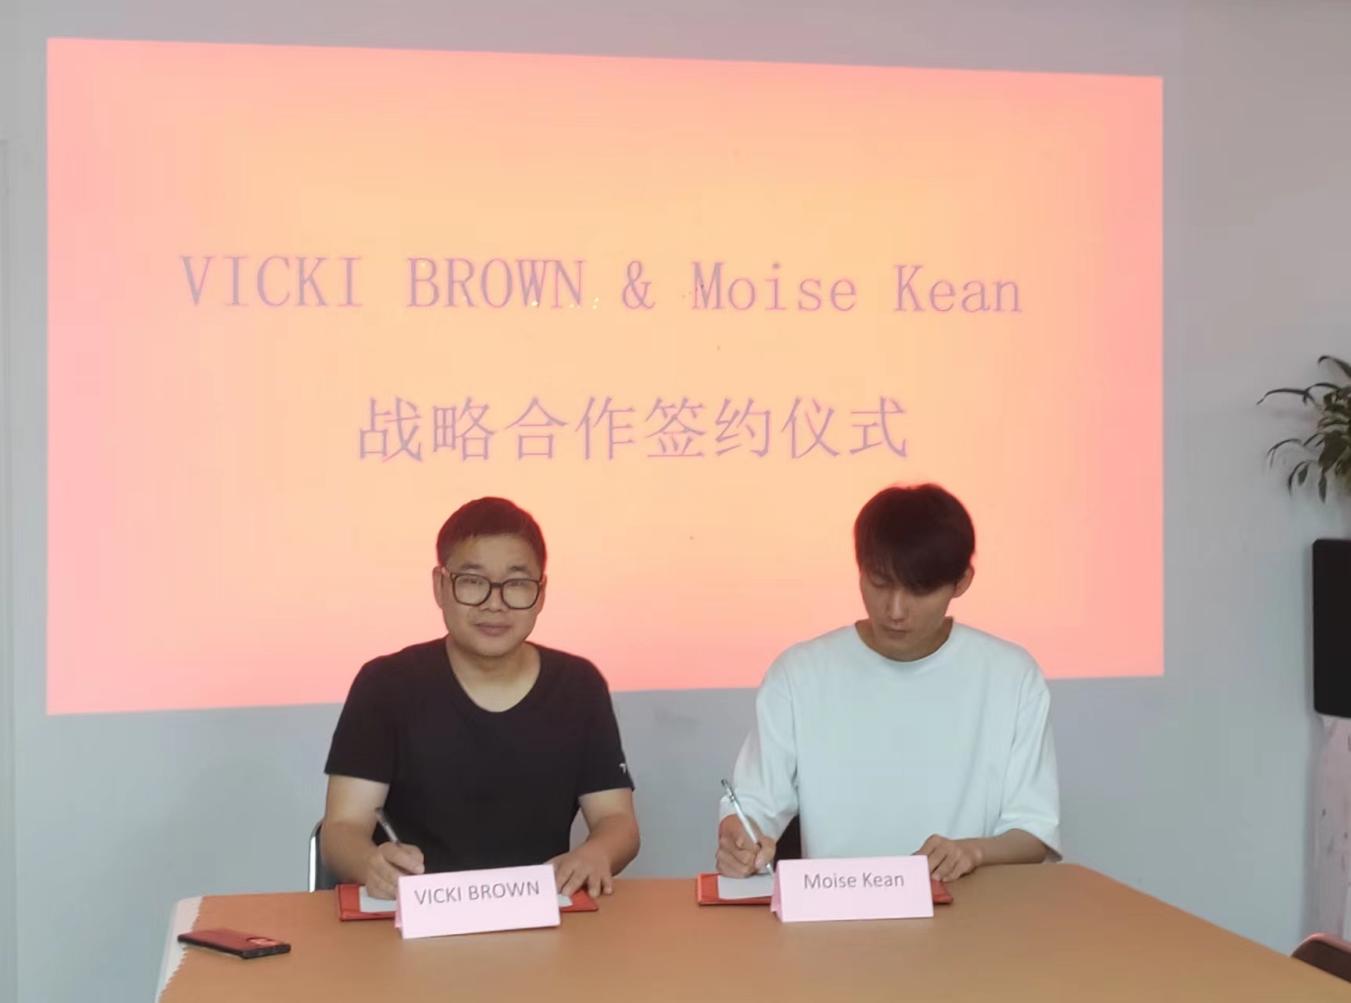 法国VICKI BROWN与MOISE KEAN签署中国区战略合作协议